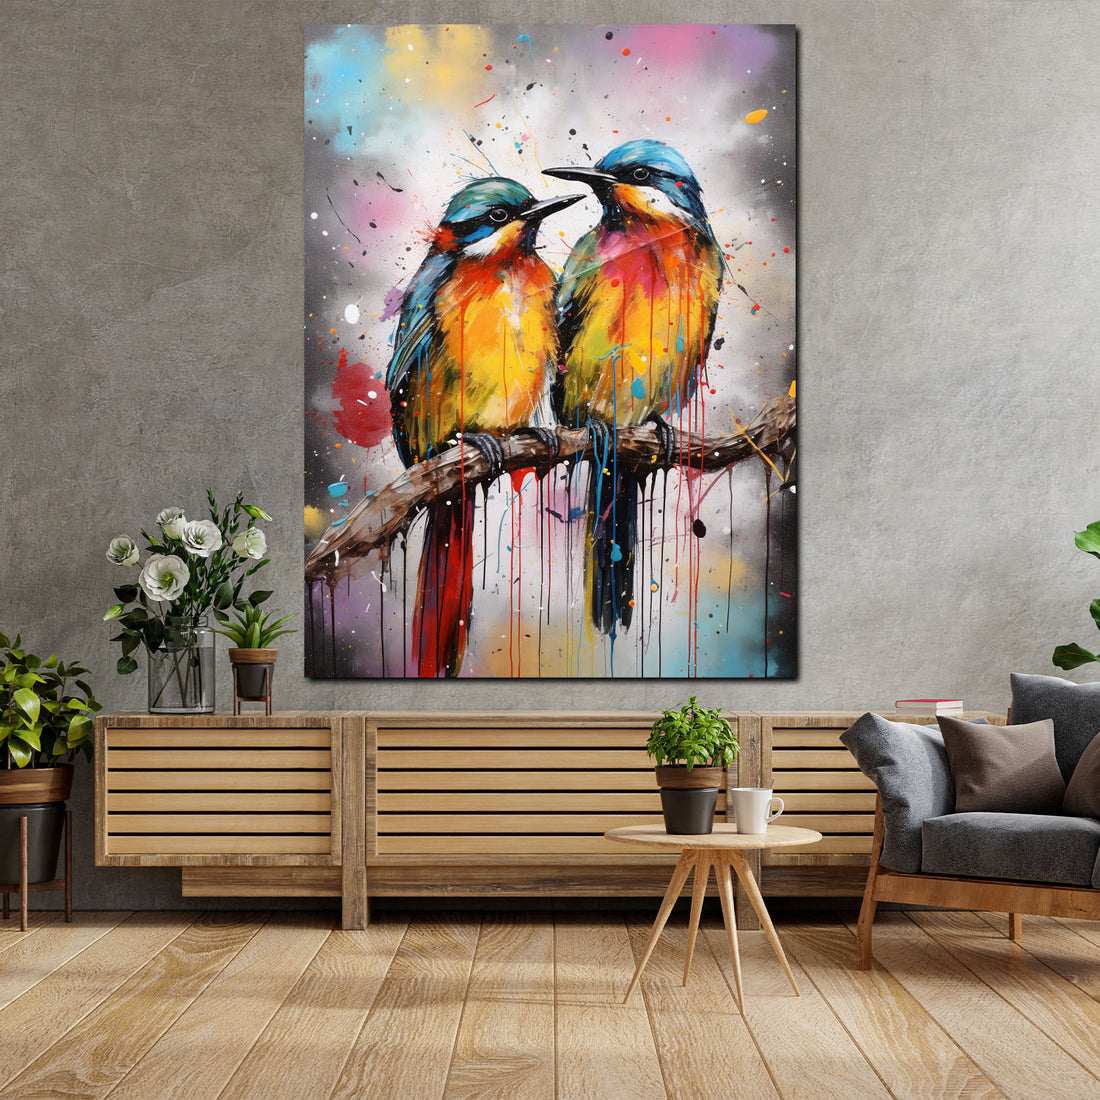 Wandbild abstrakt zwei Vögel frontal Pop Art Colour